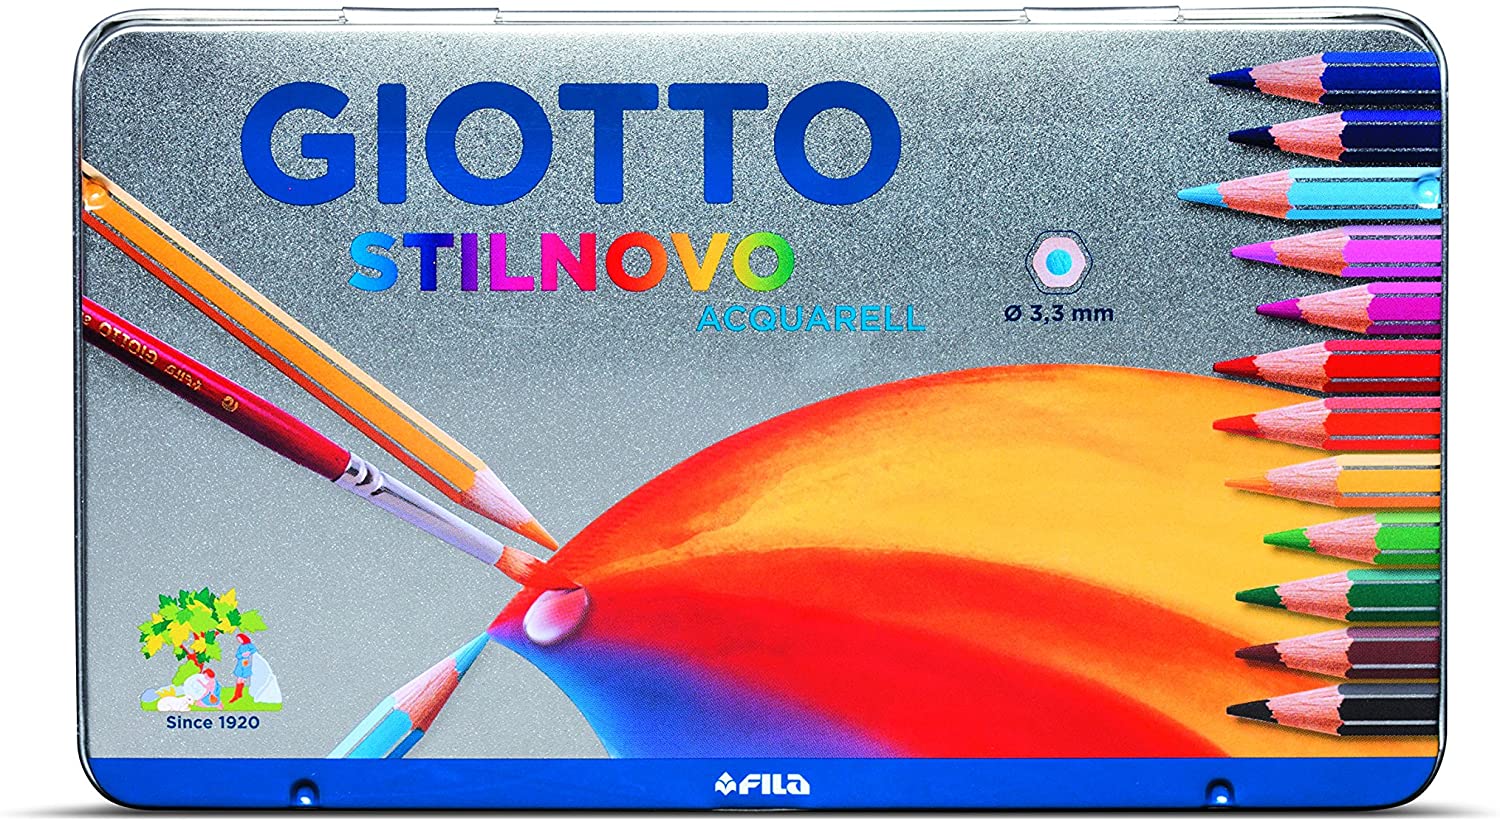 Giotto 256200 - Stilnovo Acquarell Pastelli Acquarellabili Scatola Metallo da 12 Colori